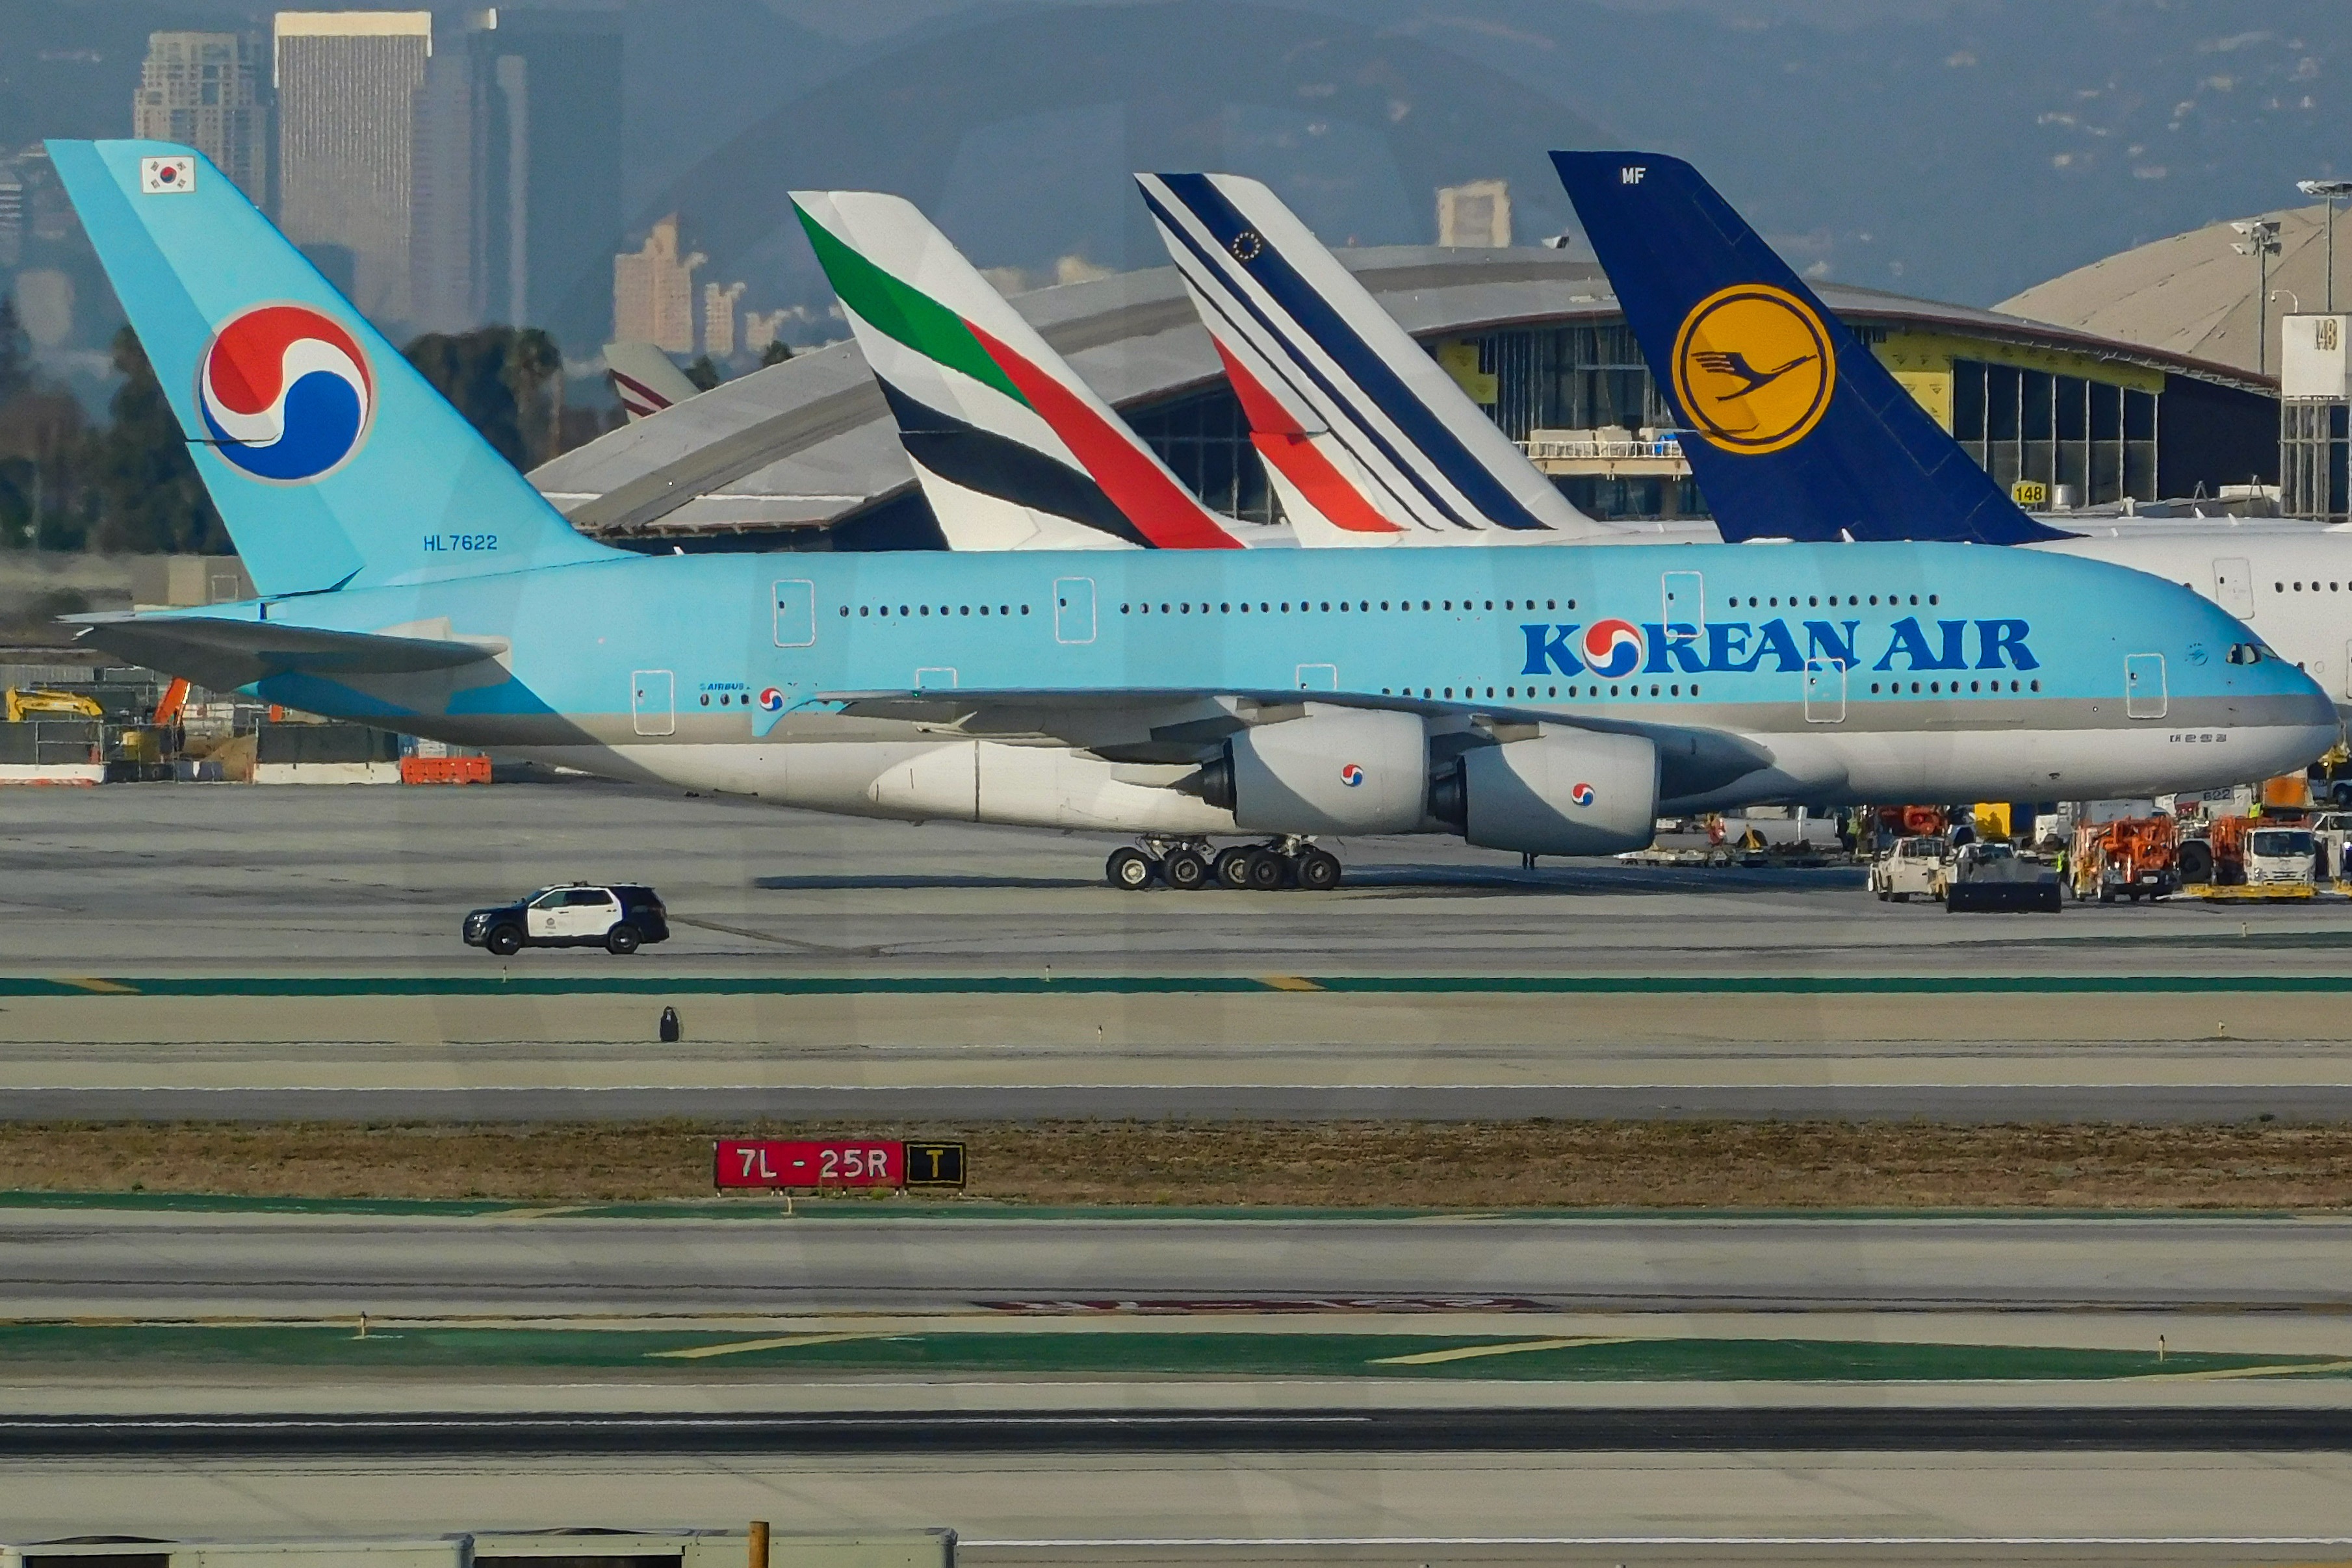 Photo of HL7622 - Korean Air A380-800 by 